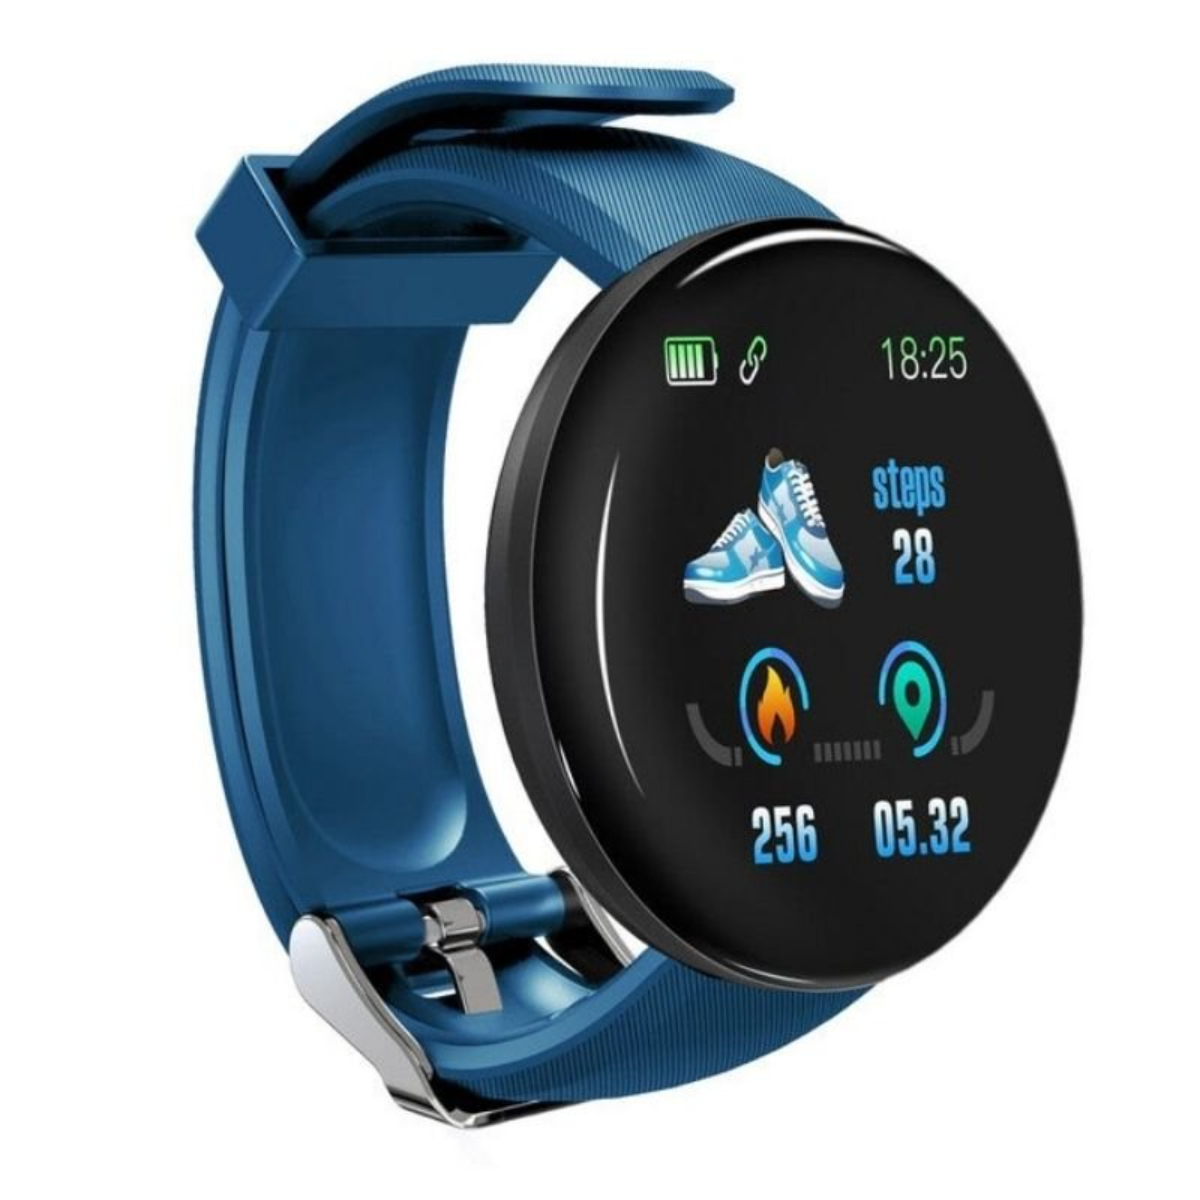 Reloj Smartwatch Klack Kd18 Con Frecuencia Cardíaca, Presión Arterial Y Notificaciones - azul - 